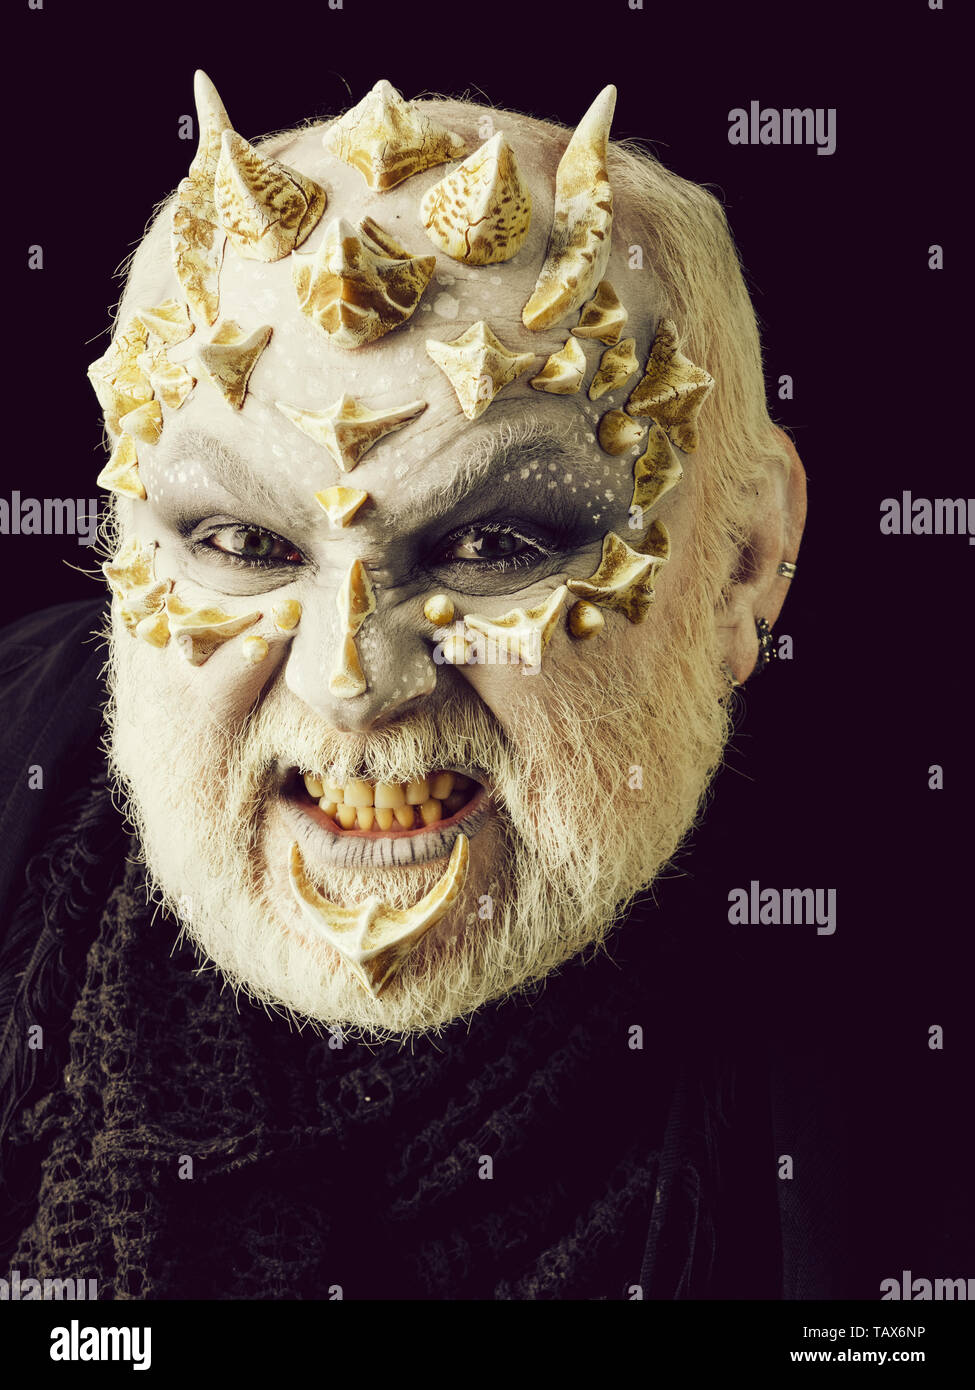 Angry monster uomo a denti stretti con il bianco degli occhi e barbuto spinoso faccia su sfondo nero. L' orrore e la nozione di fantasia. Foto Stock